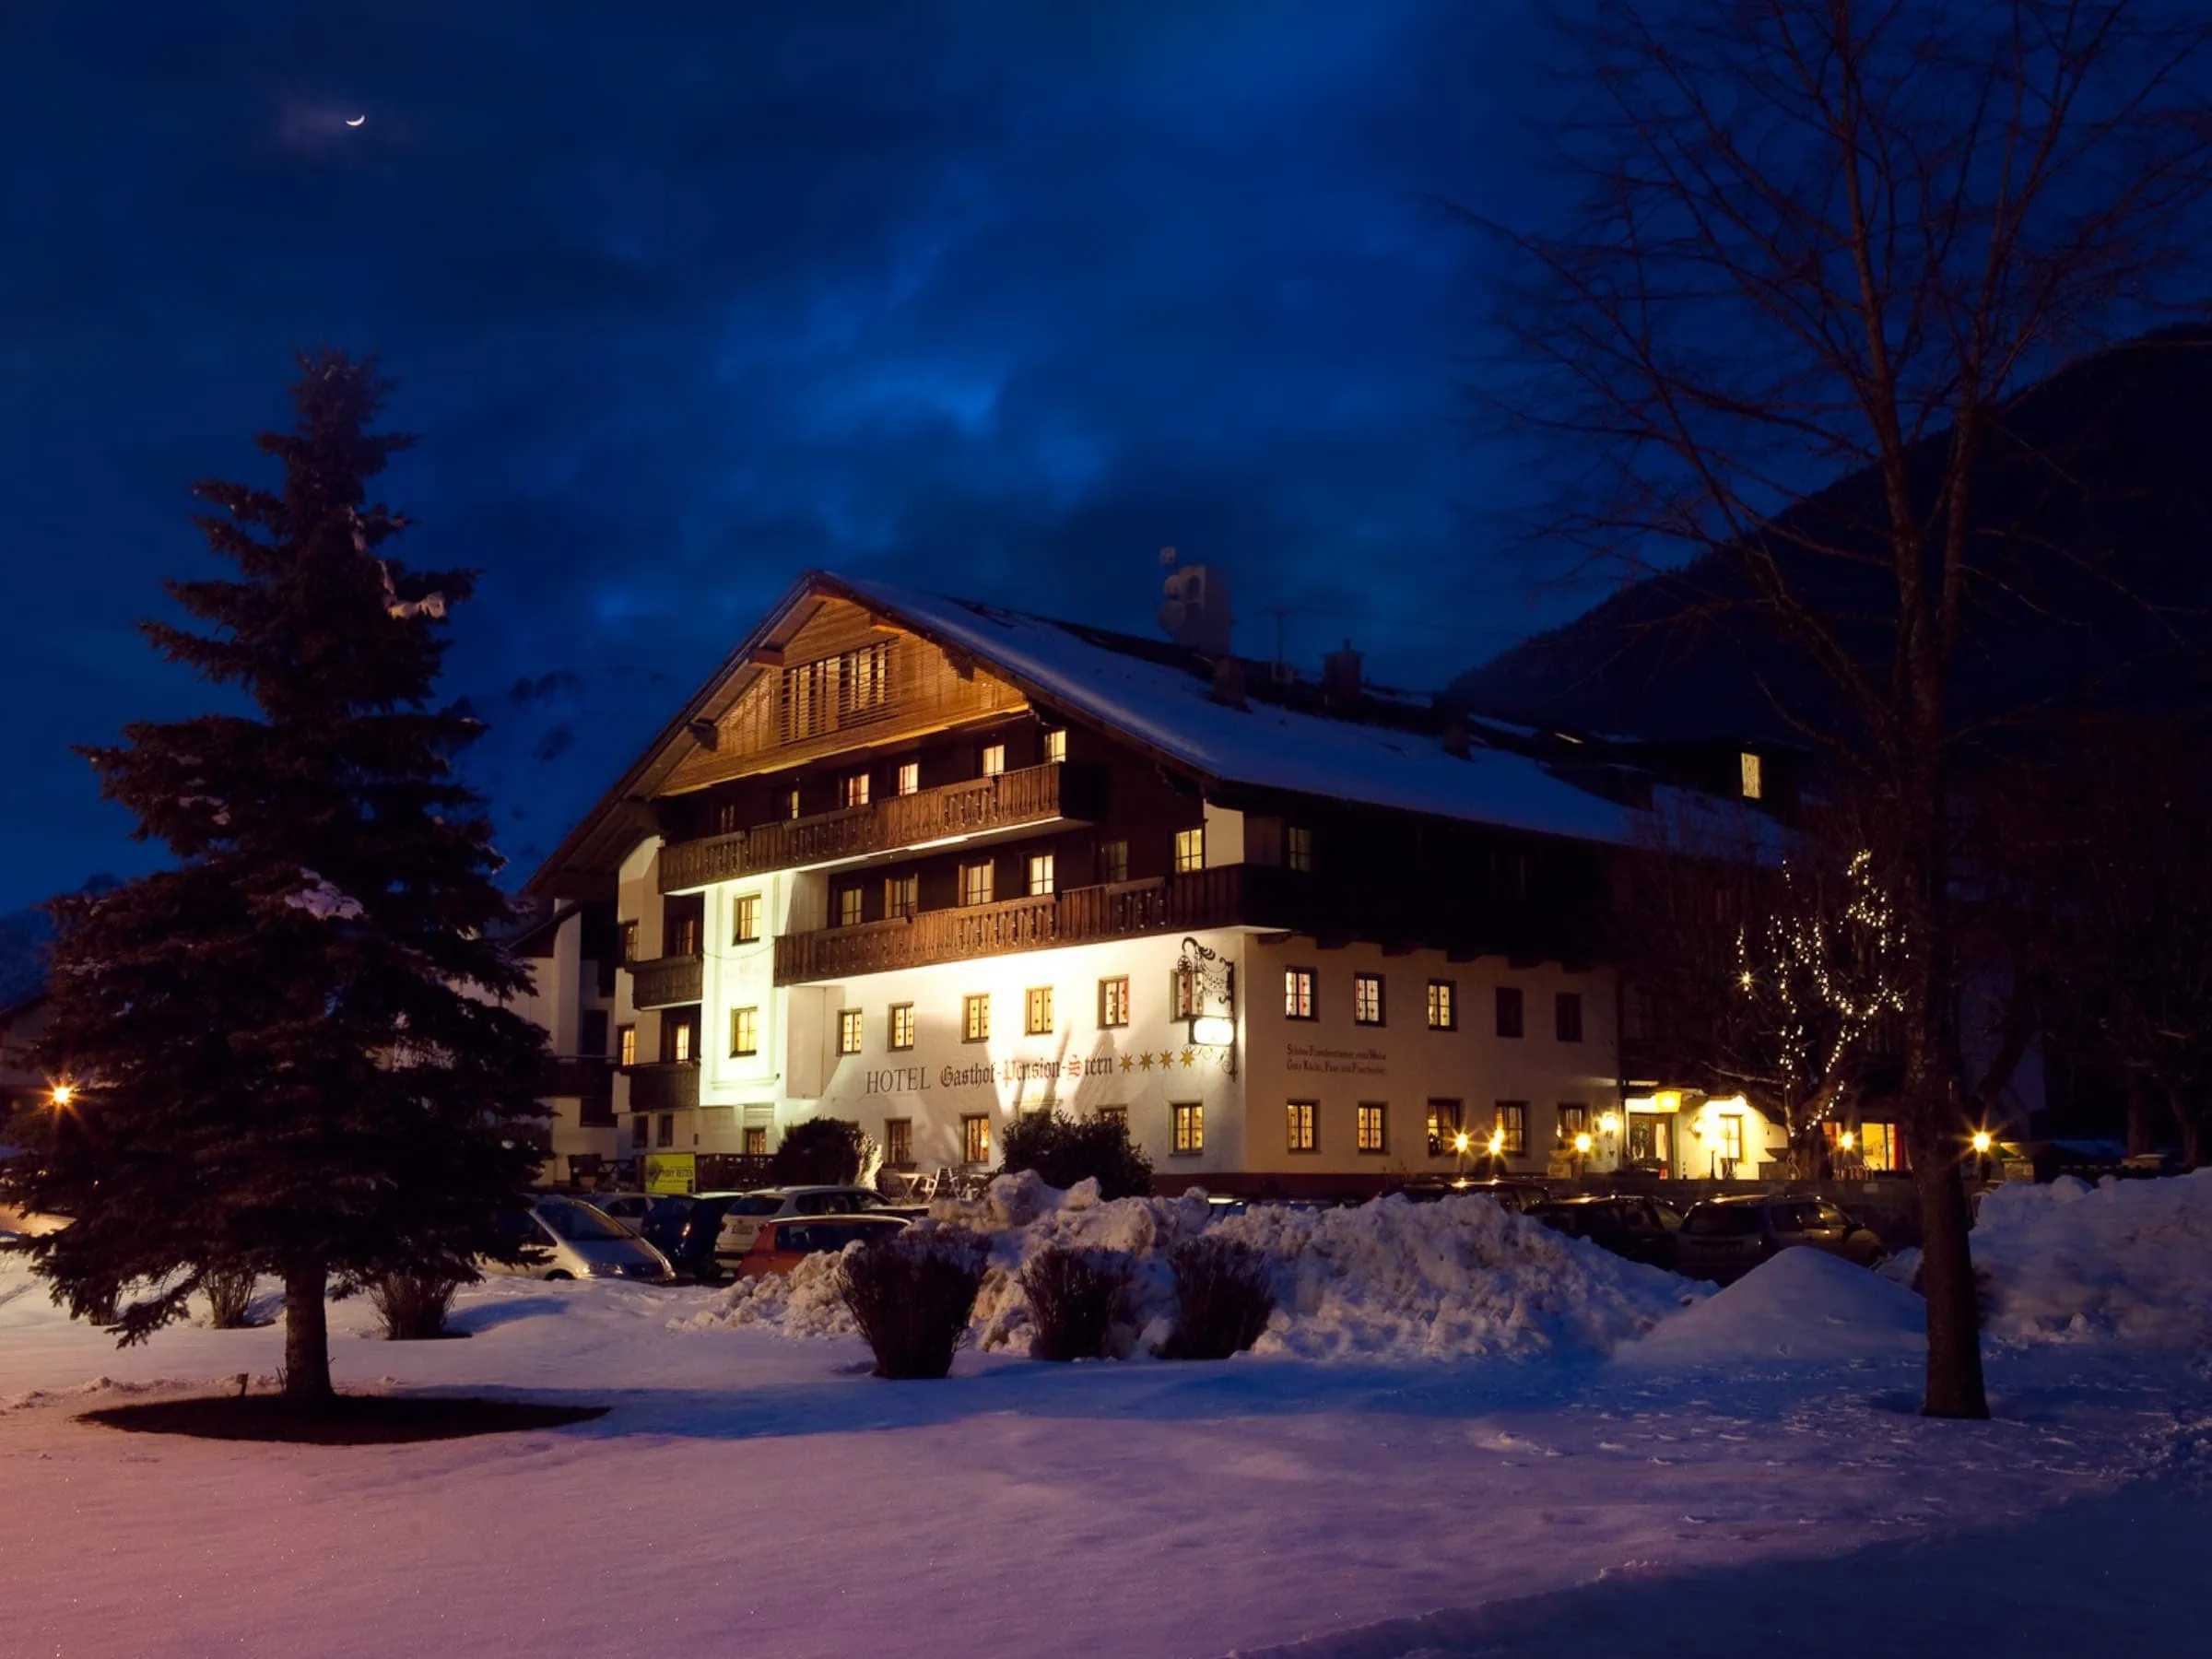 Familienurlaub in Tirol mit Kindern: Hotel Stern im Winter // HIMBEER